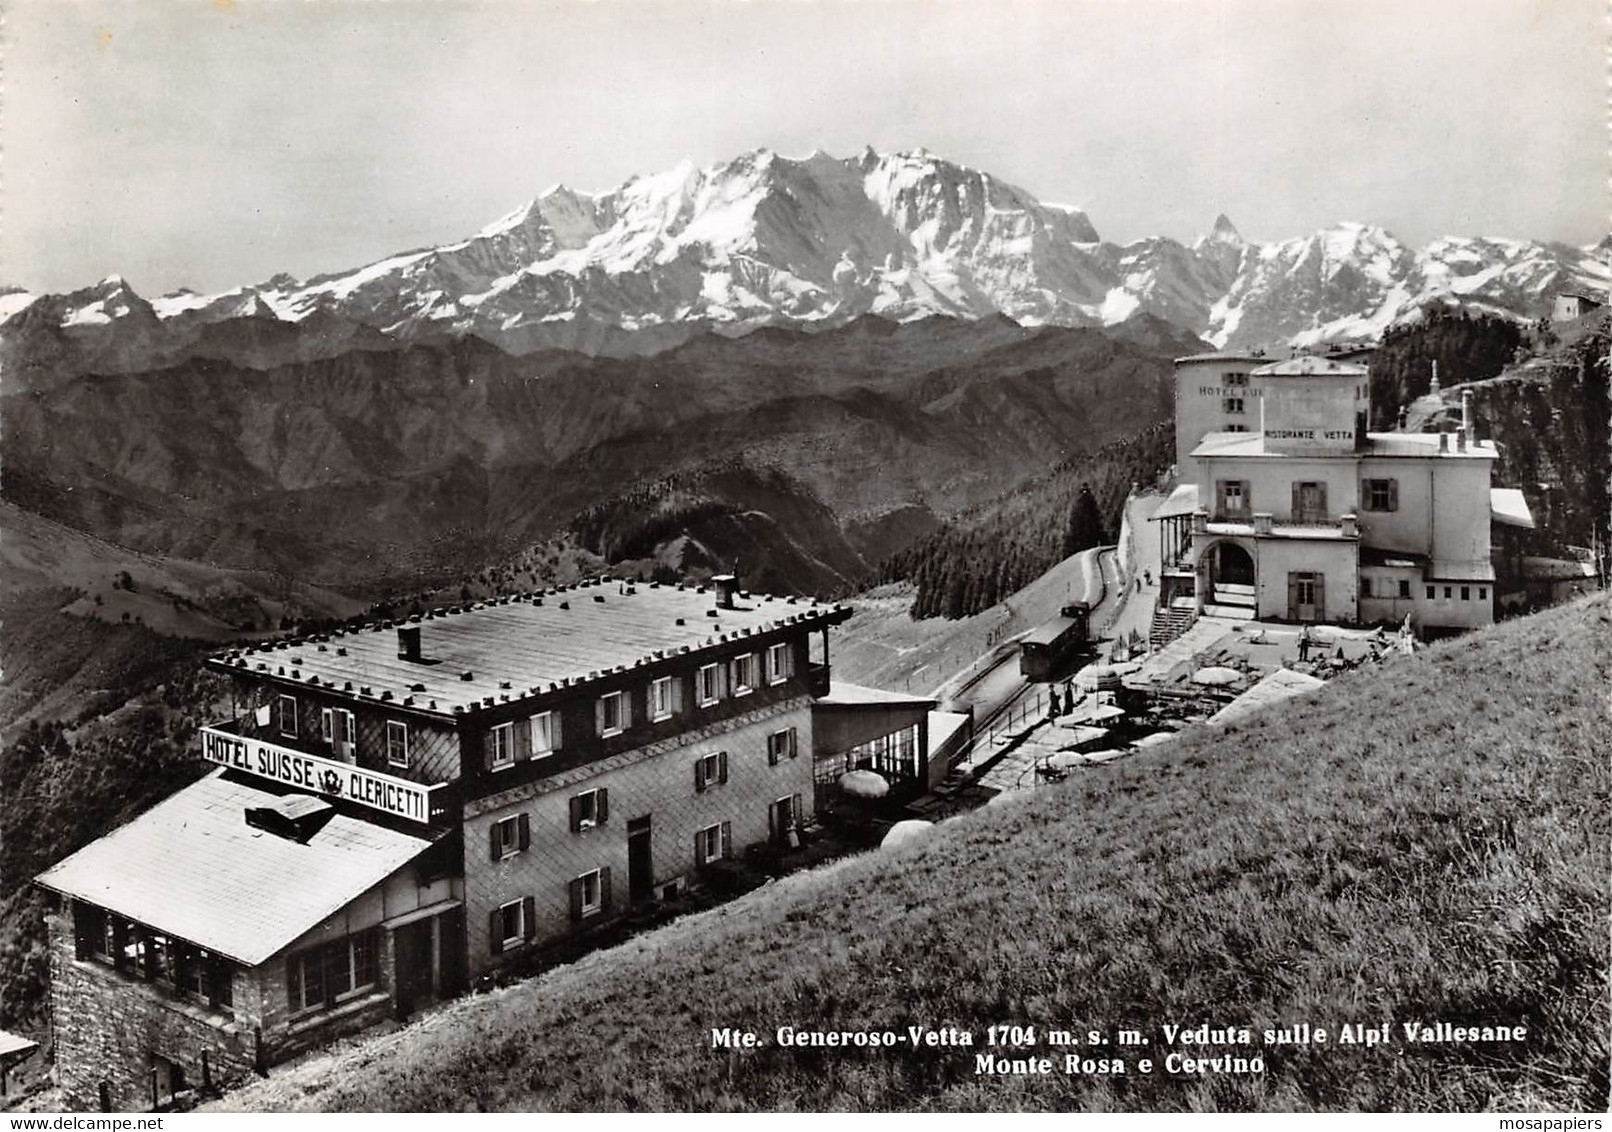 Monte Generoso-Vetta - Como